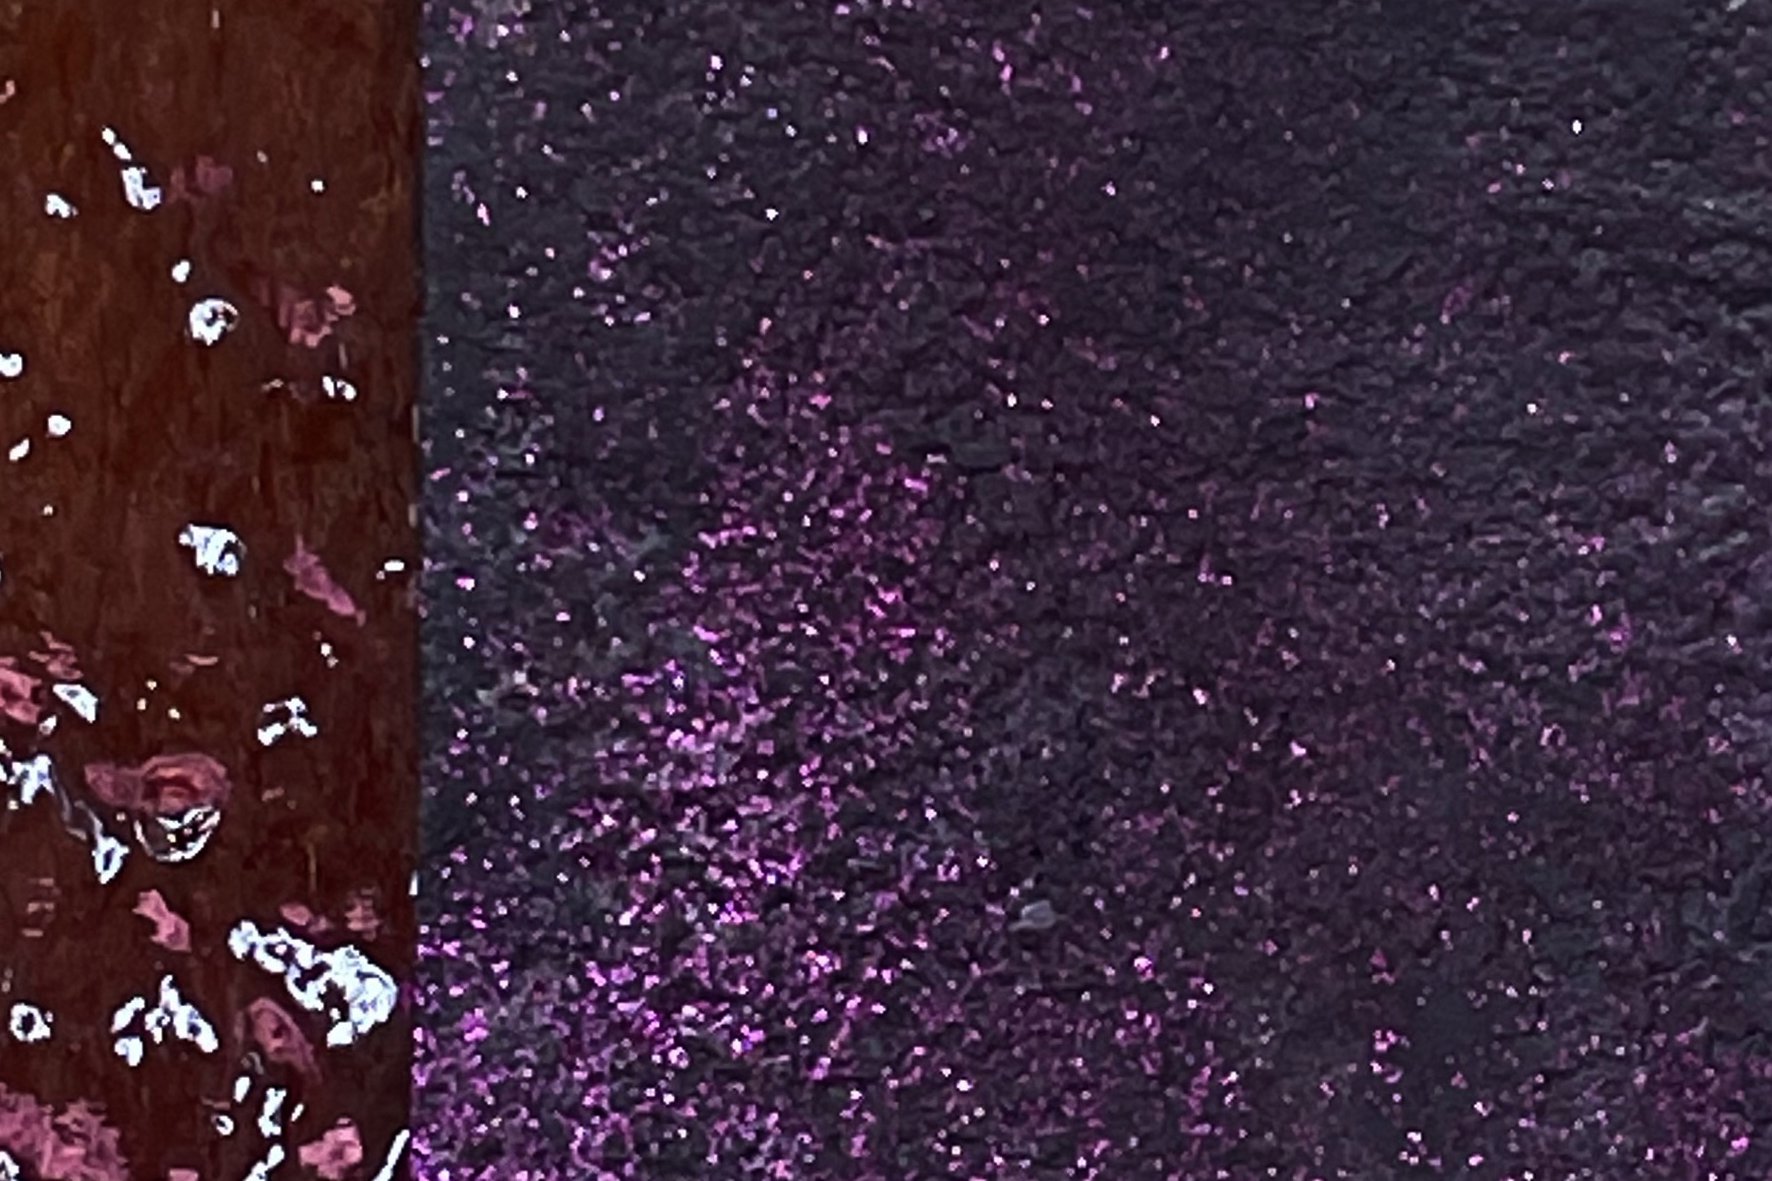 KaraBurrowes-painting-glass-glitter-detail-LR.jpg